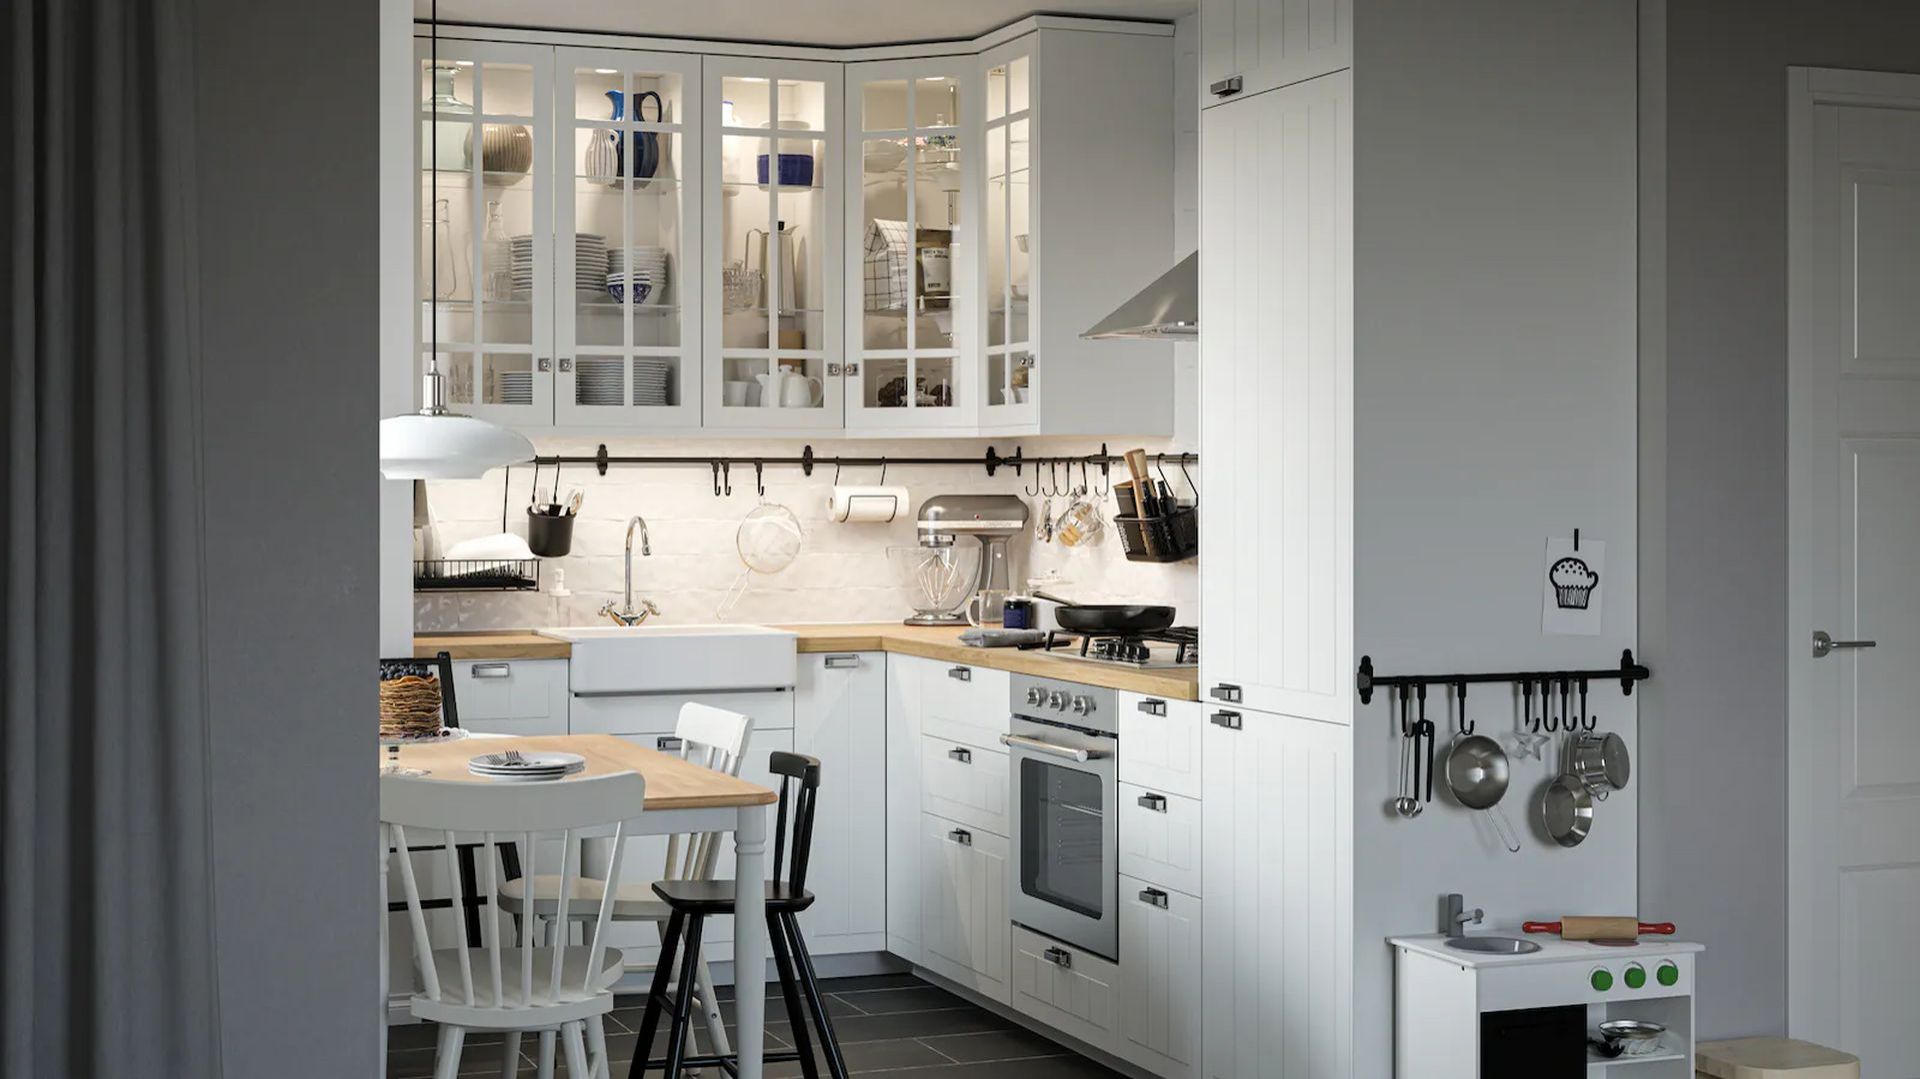 Kuchnia IKEA: 10 pomysłów na gotowe meble kuchenne. Zdjęcia i ceny zestawów mebli do kuchni